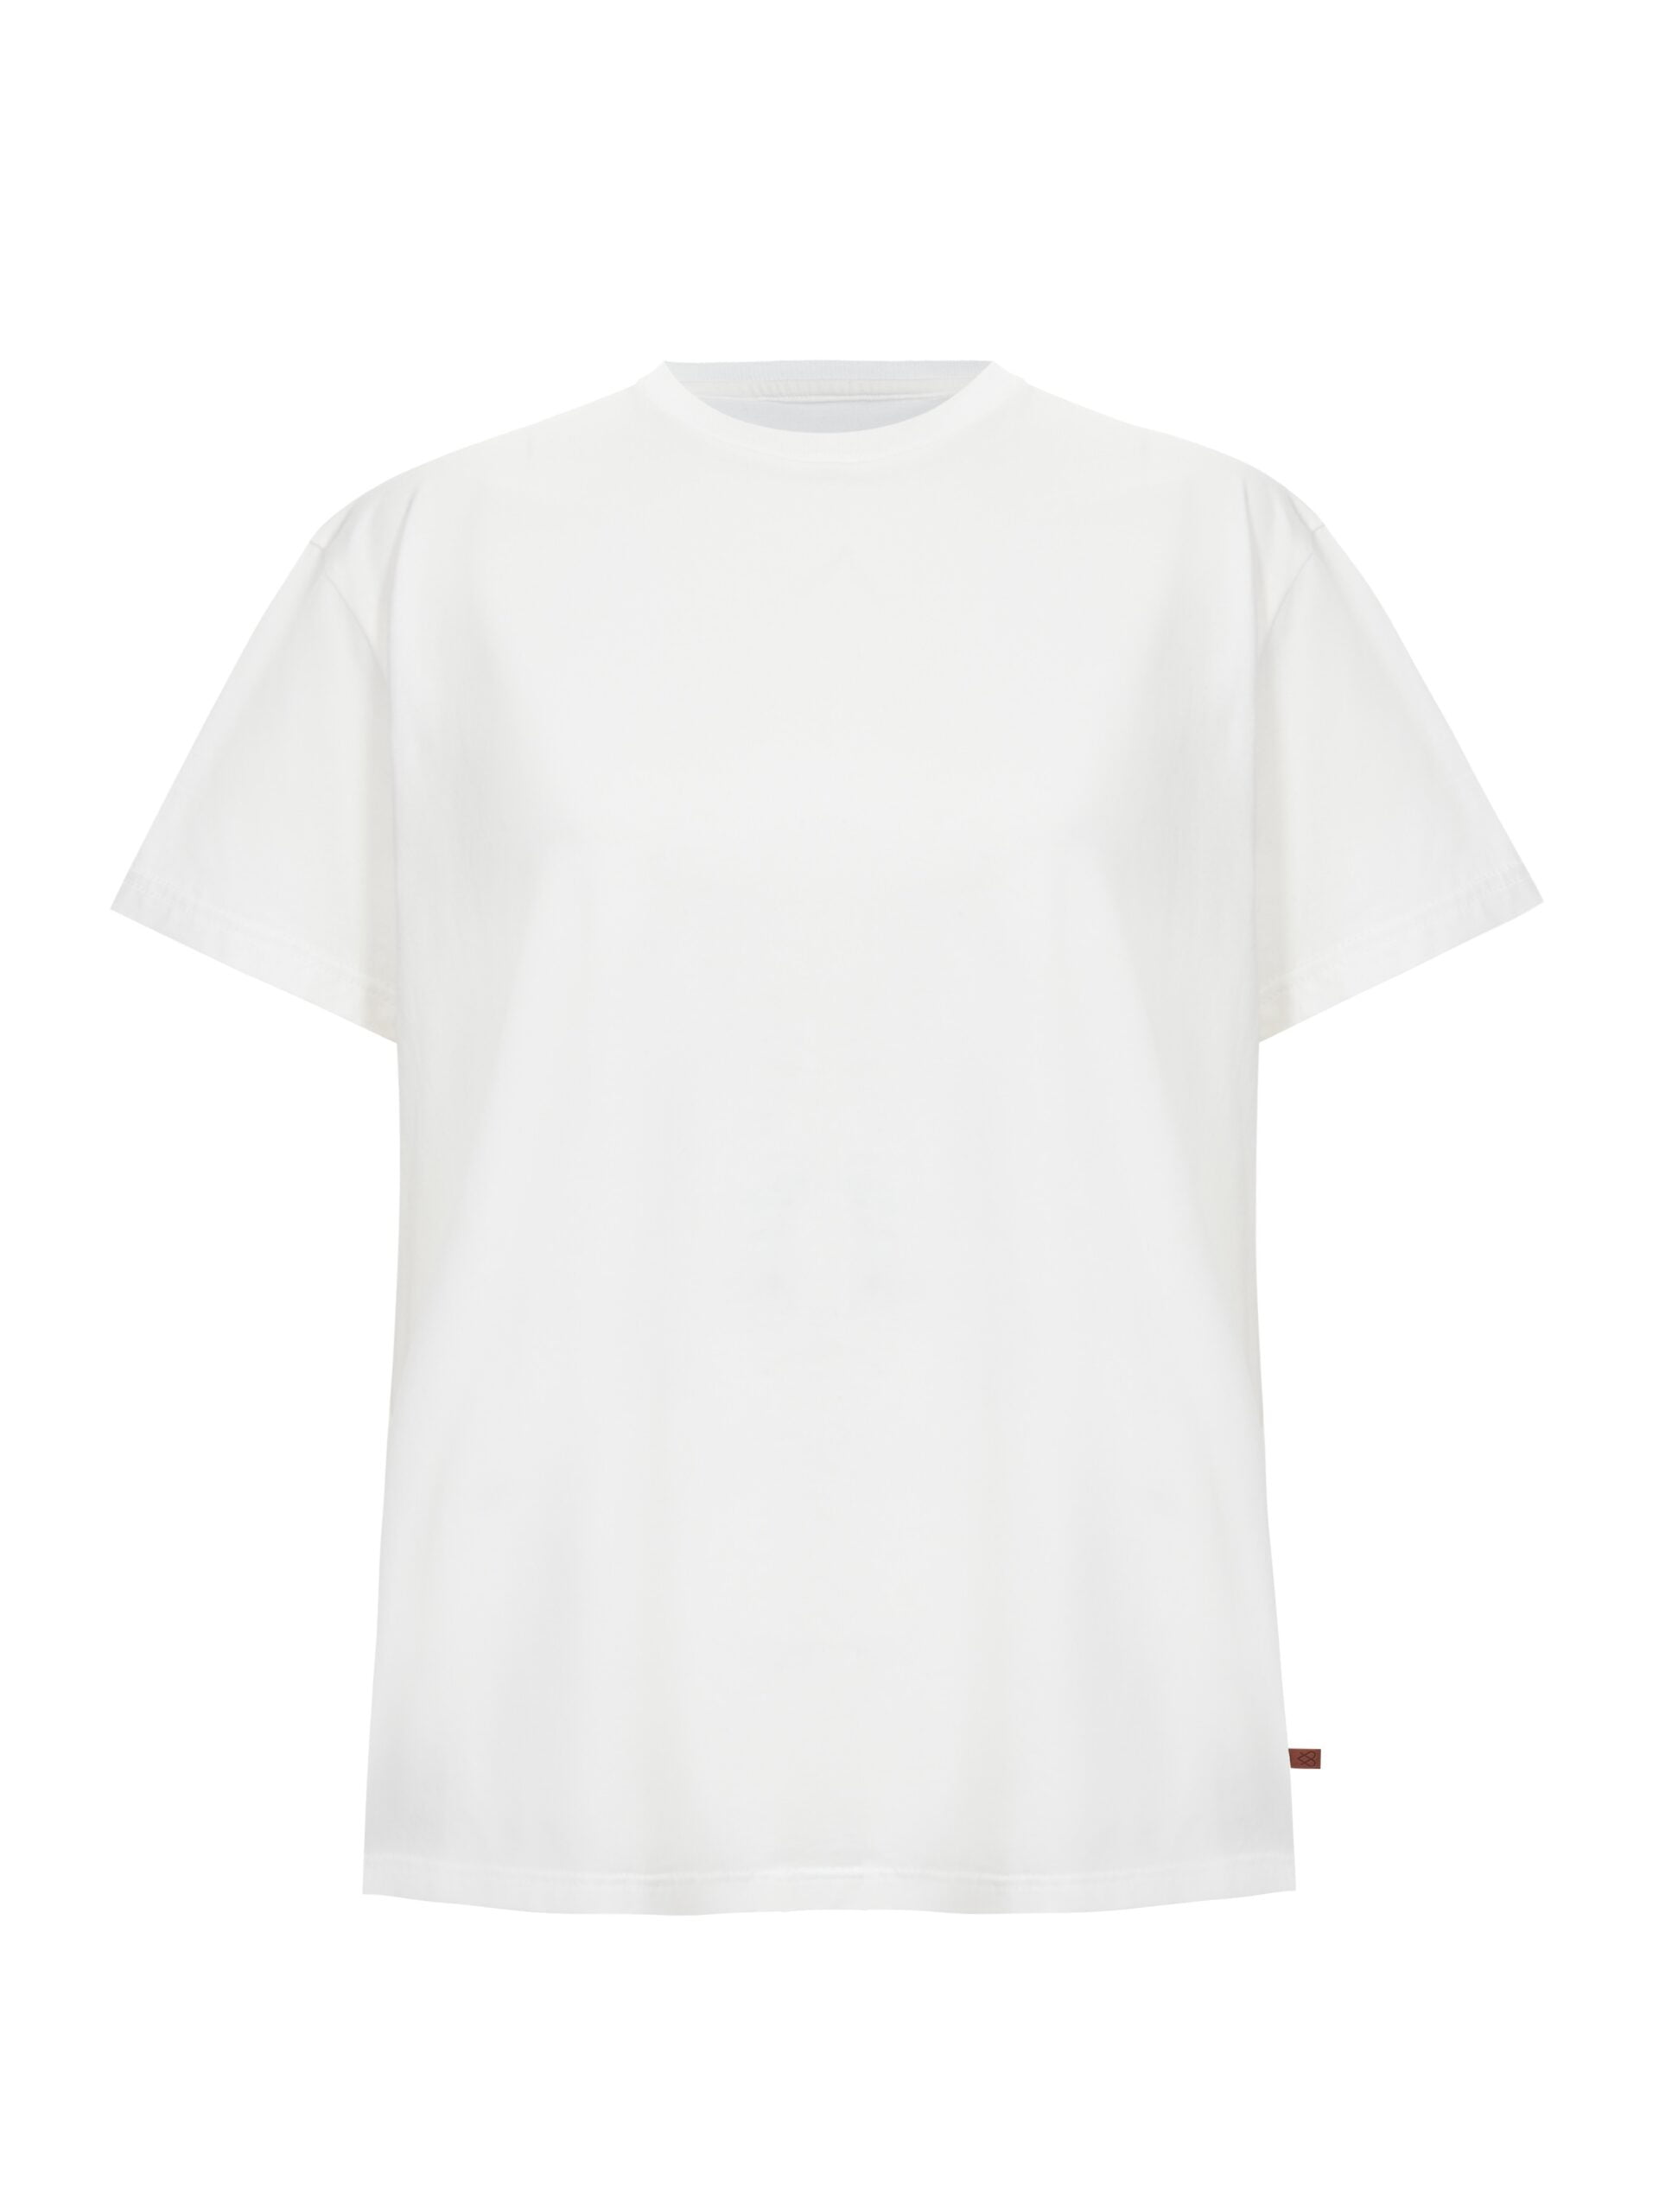 7814 T Shirt Unisex Premium Basic Off White Przod 219